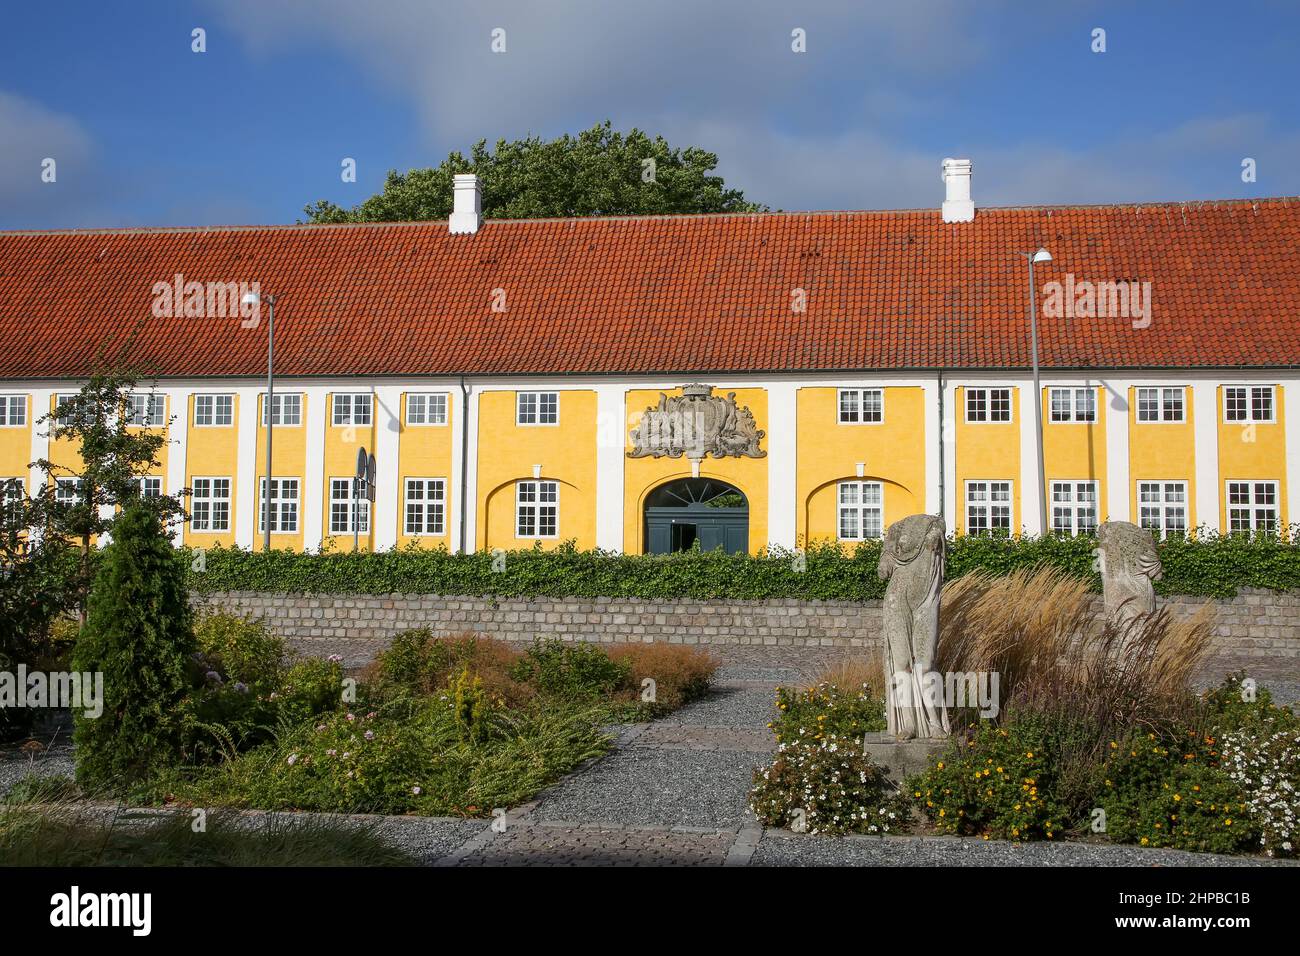 Il monastero di Kaalund si trova nel comune di Kalundborg, Danimarca. Storico edificio giallo e bianco con giardini in primo piano. Foto Stock